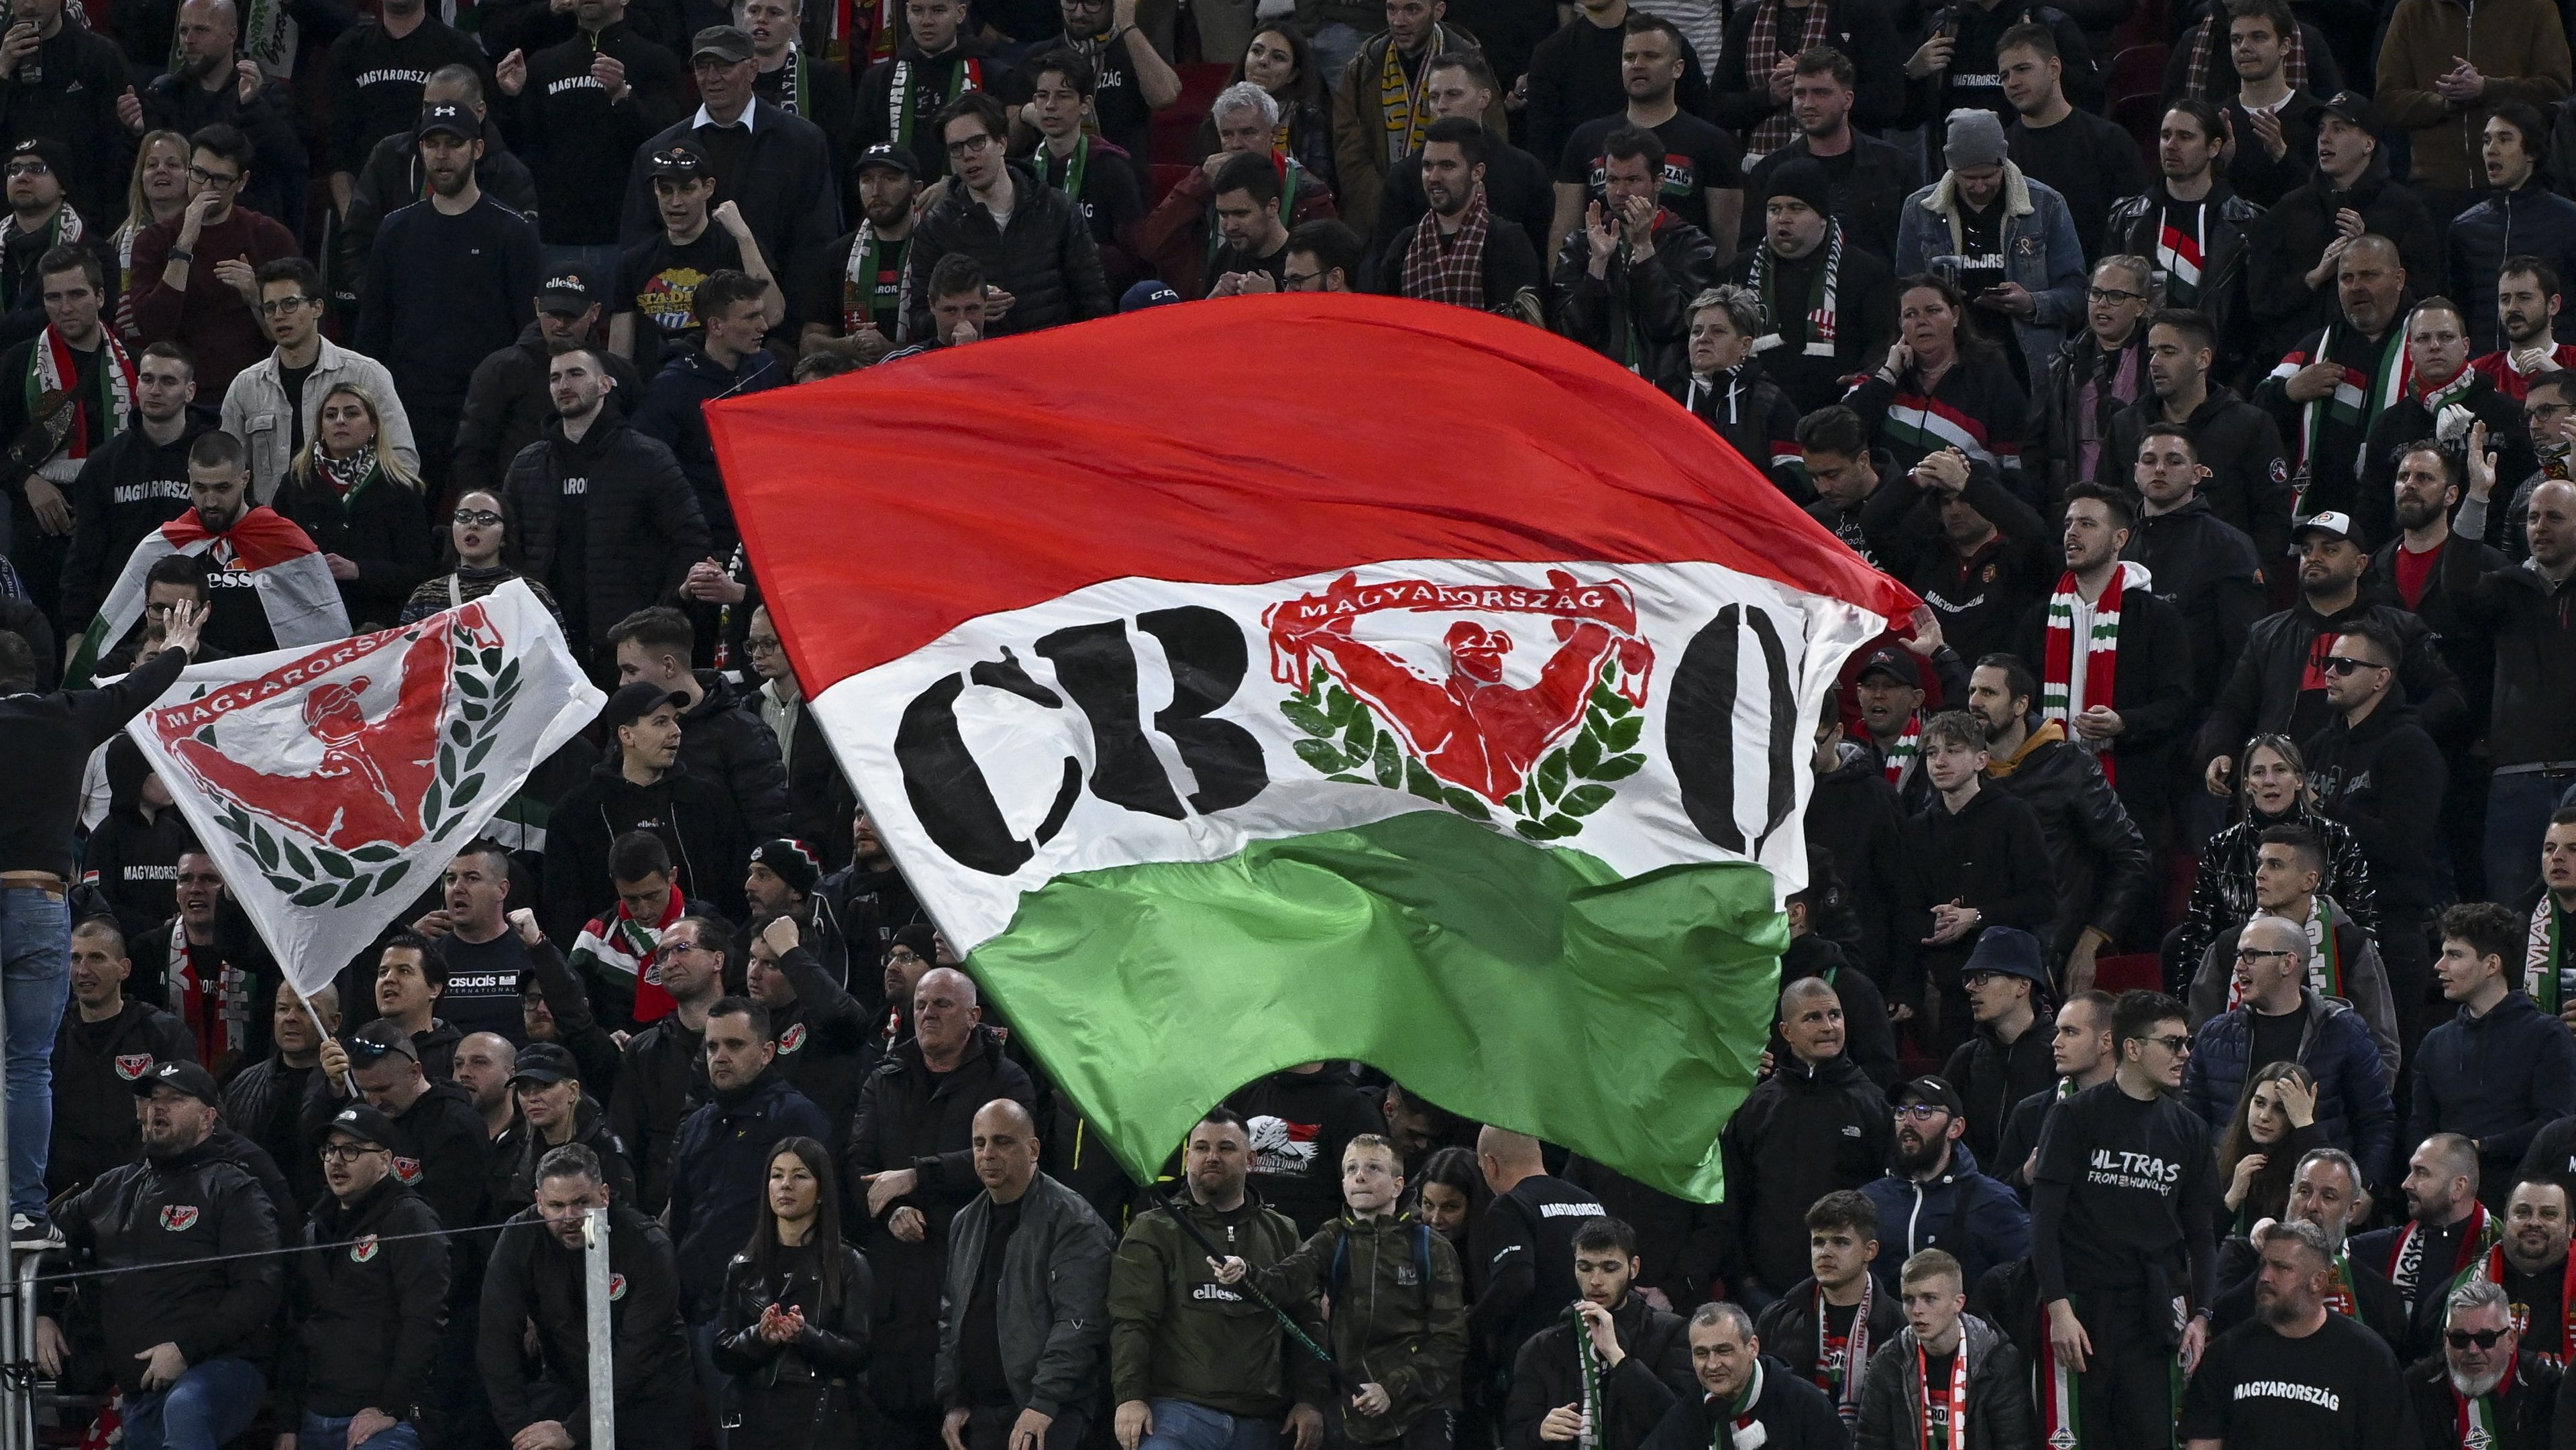 A magyar szurkolók részéről a stadionban nem tapasztalni erőszakosságot. (Fotó: Illyés Tibor/MTI)